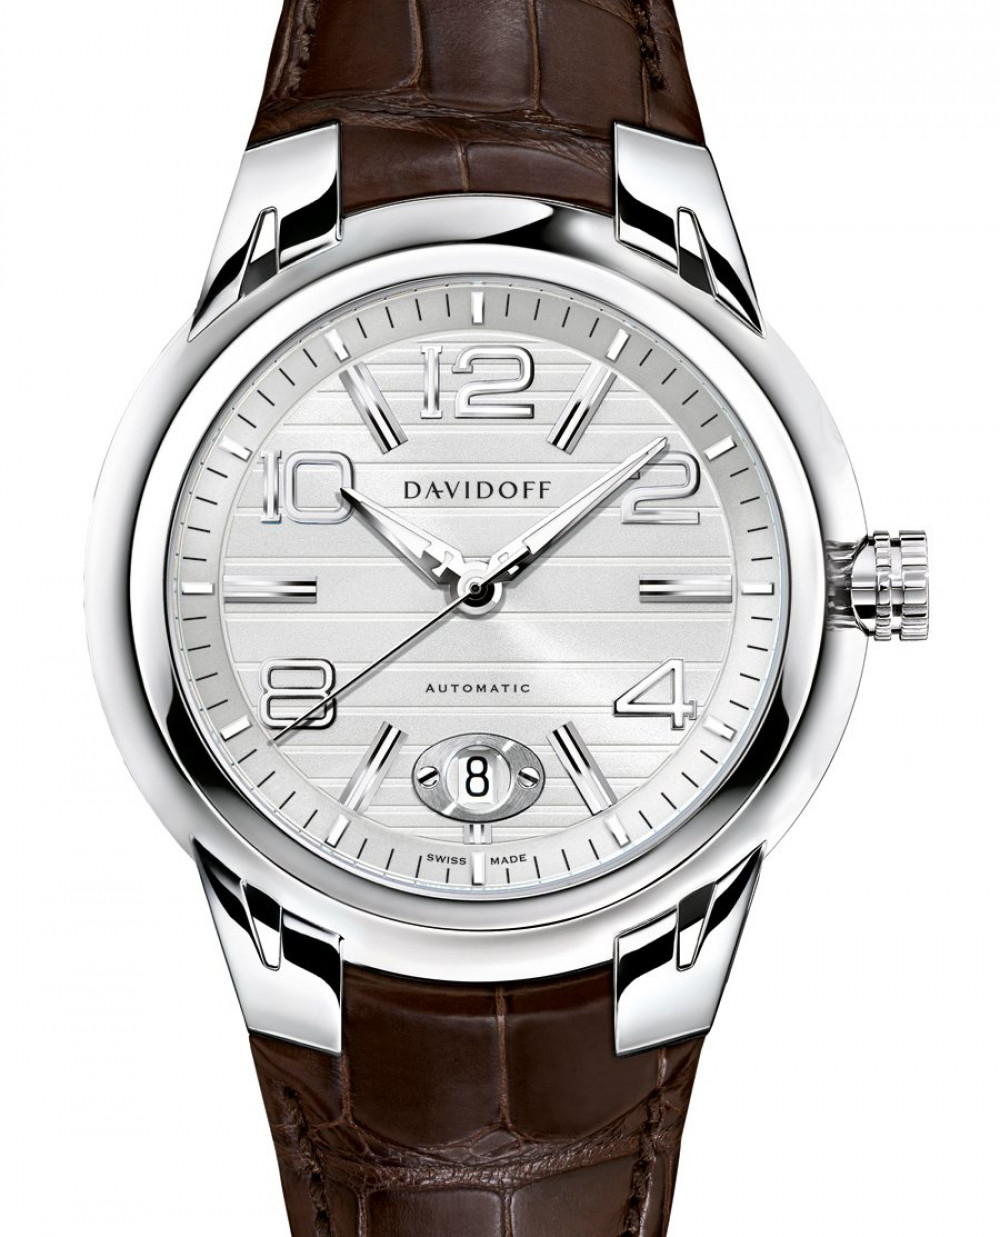 Zegarek firmy Davidoff, model Velero Automatic